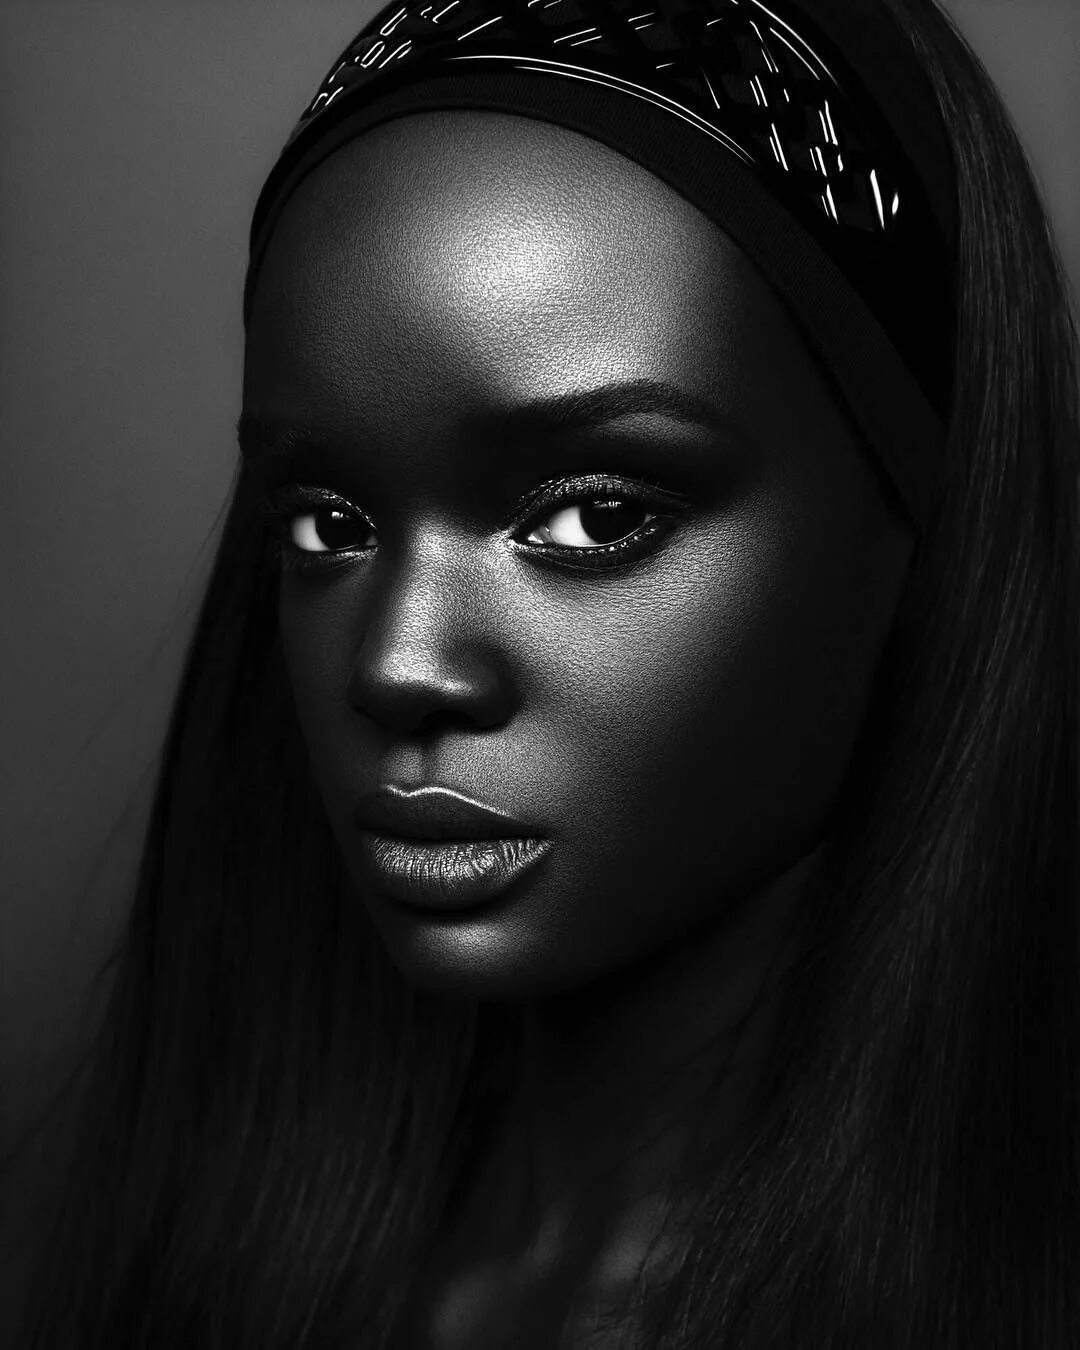 Модель даки тот (Duckie thot) из Южного Судана. Брук Бейли темнокожая модель. Пегги Даниэль темнокожая модель. Афроамериканцы женщины